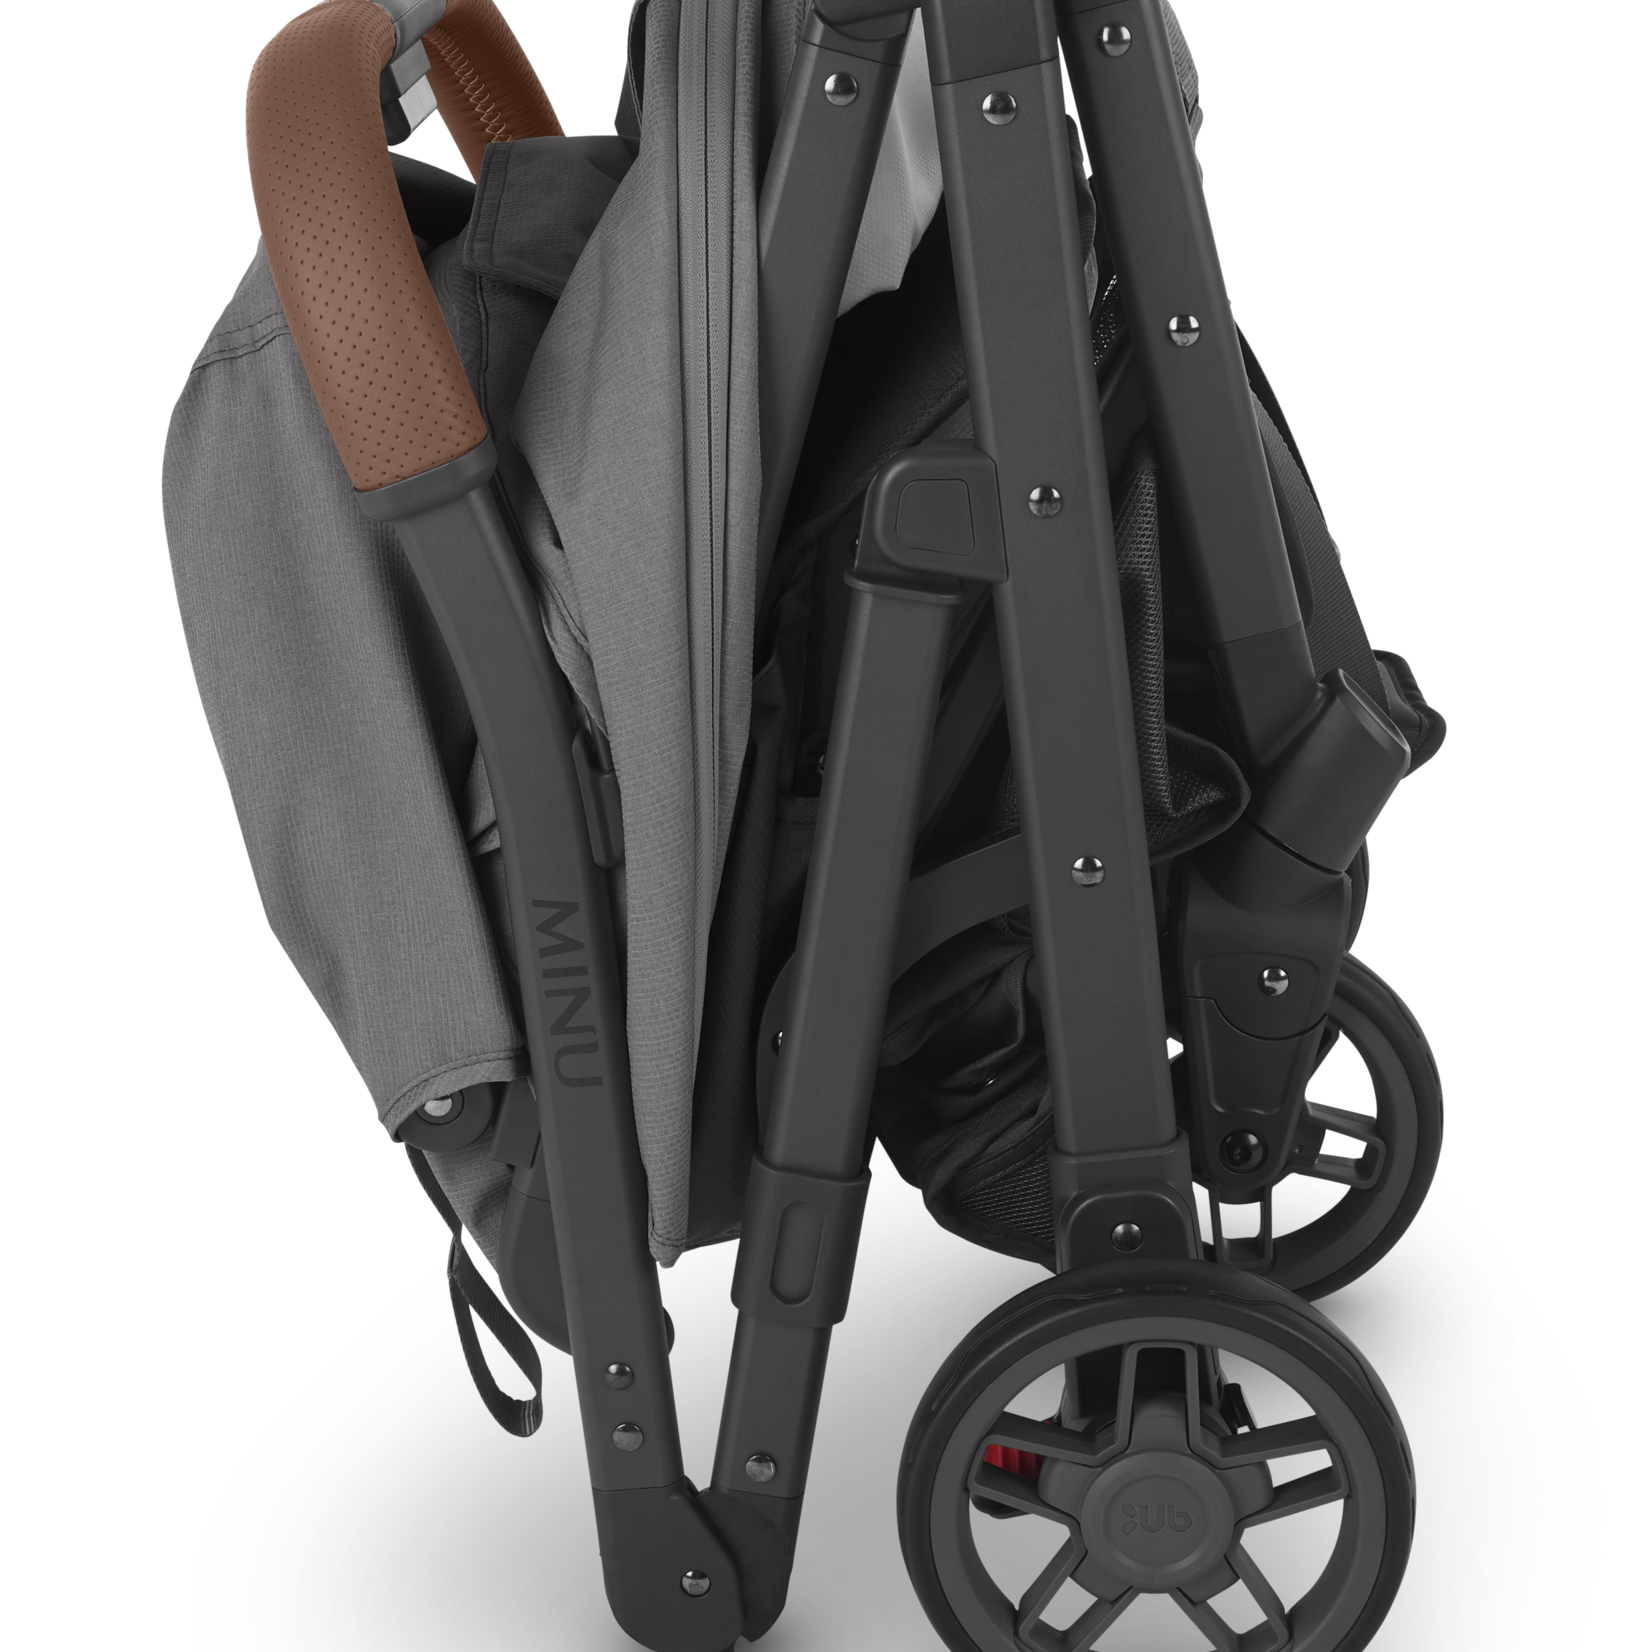 Uppababy MINU V2 Stroller - Charcoal Melange/Carbon/Saddle Leather (Greyson)